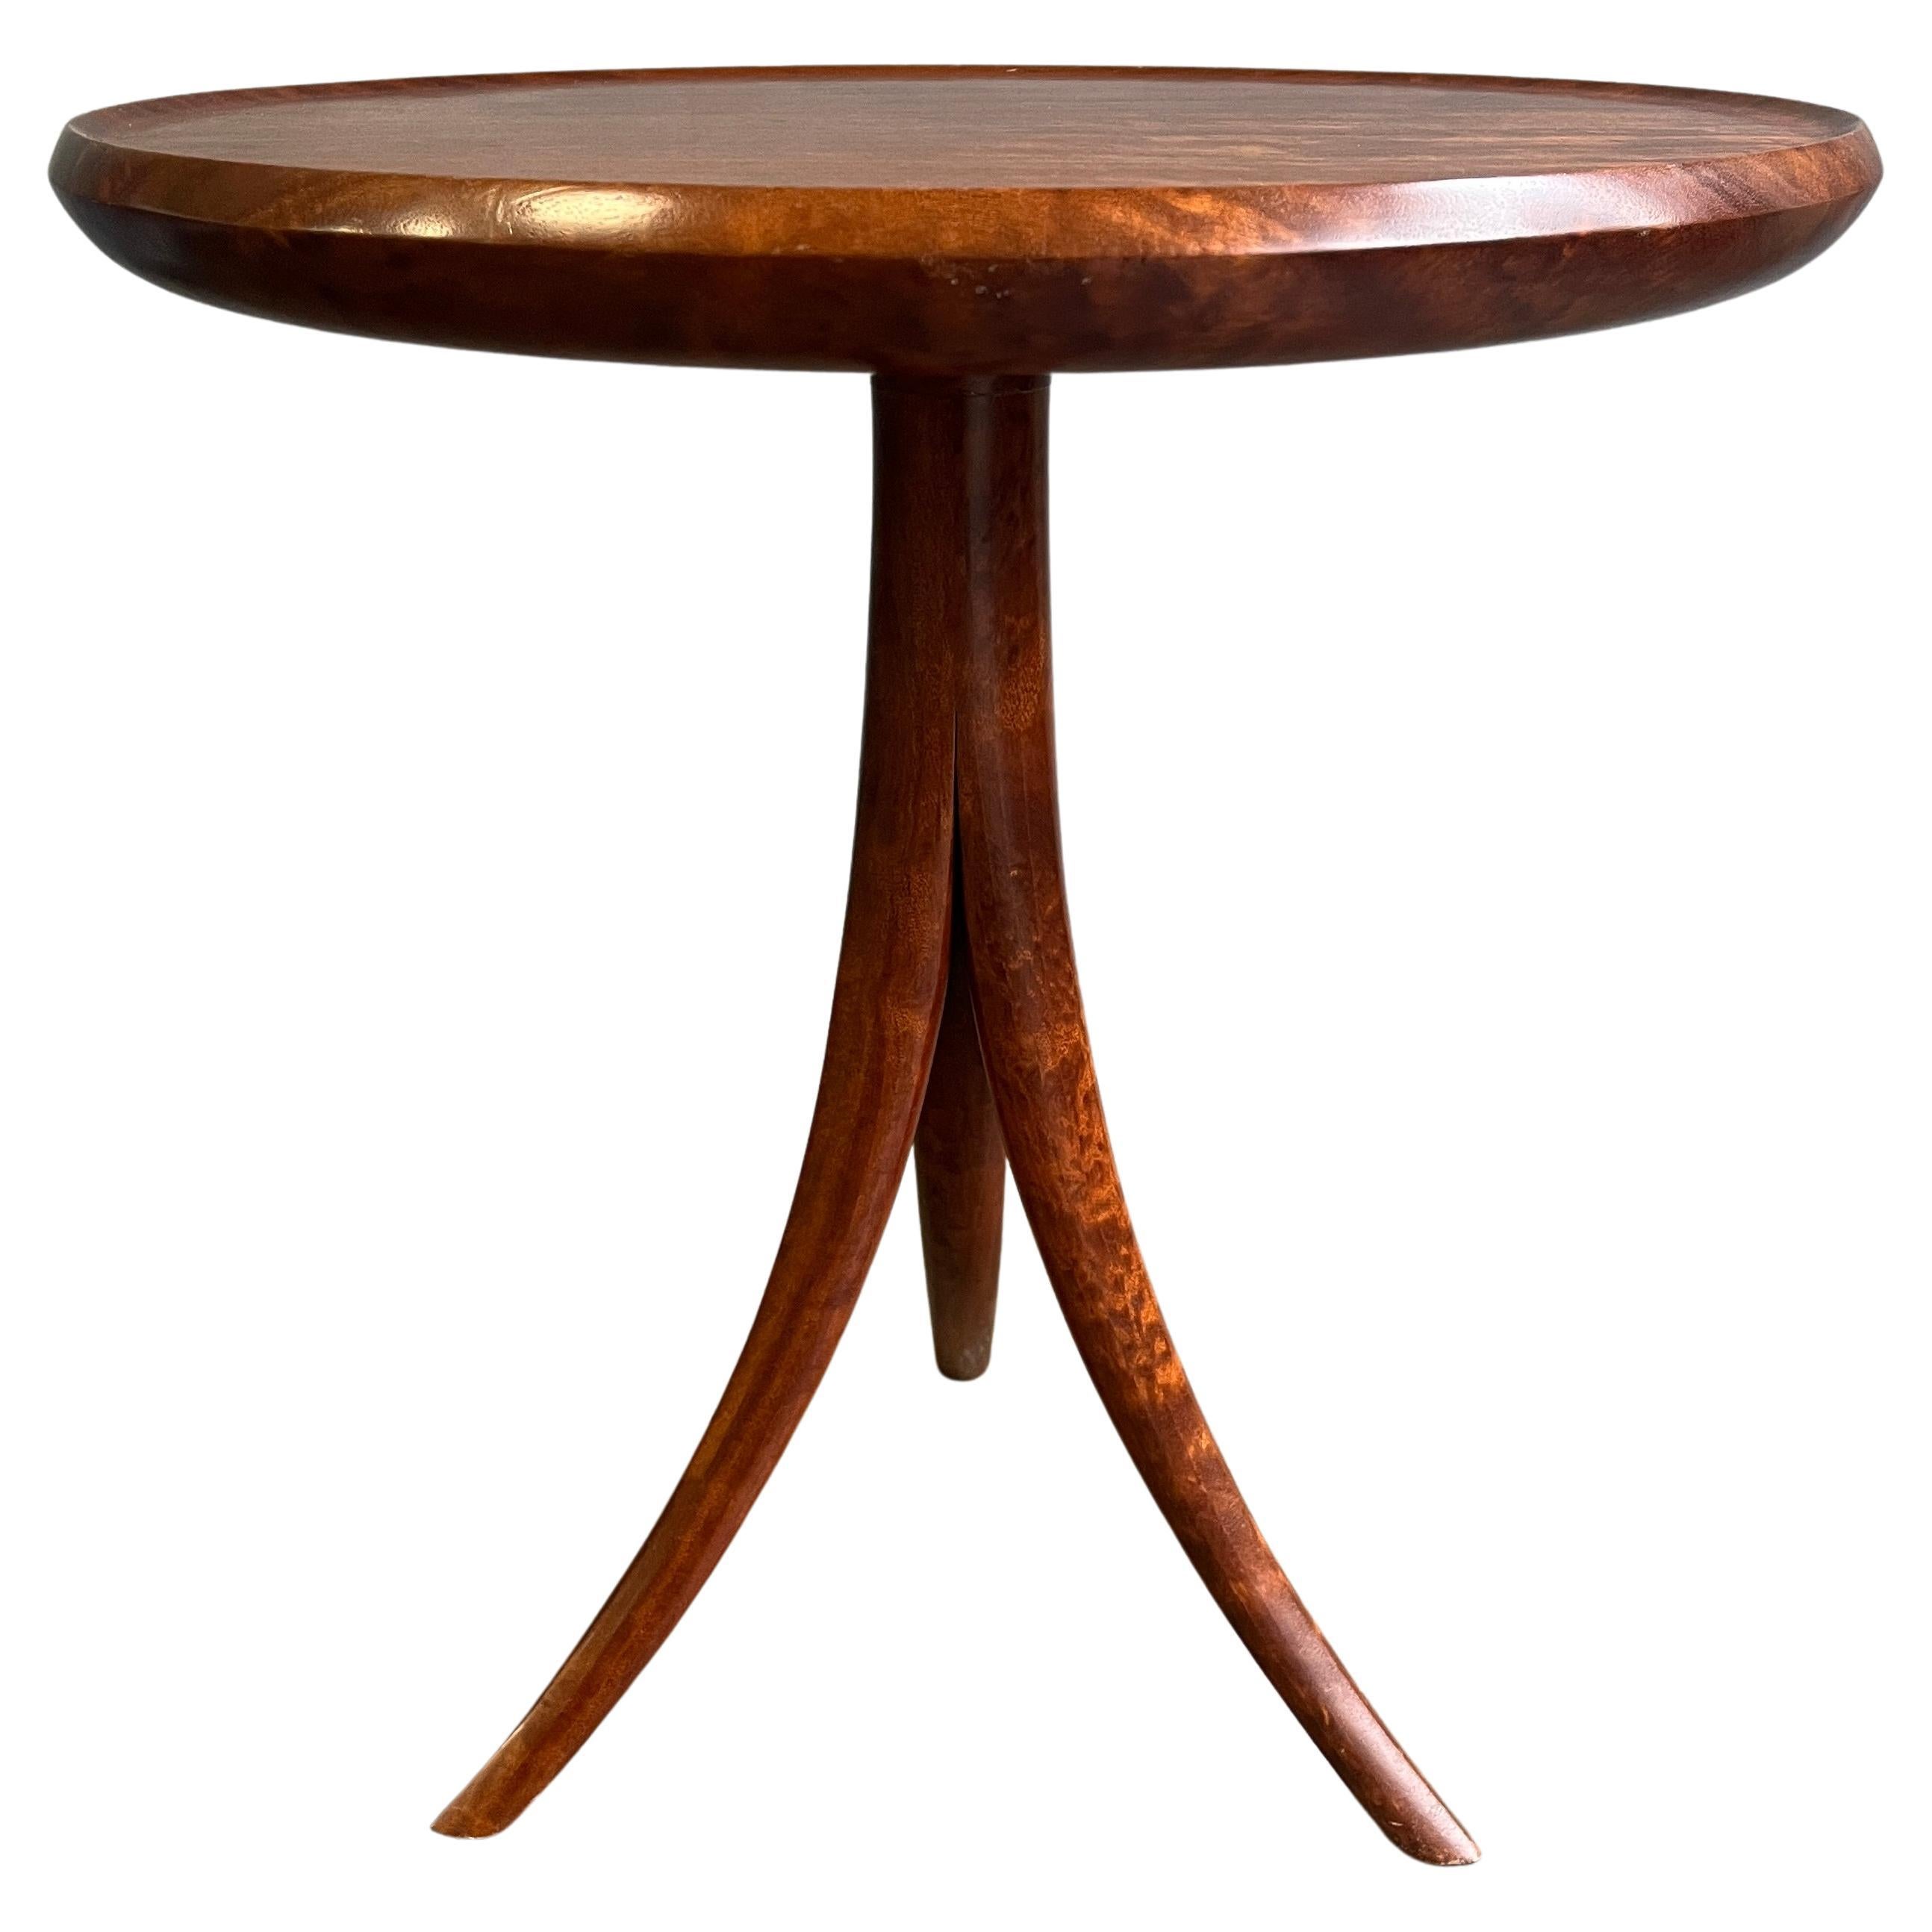 Außergewöhnlicher Dreibein-Tisch im Stil der Jahrhundertmitte mit unglaublicher Maserung, wahrscheinlich ein tropisches Hartholz, mit runder gewölbter Platte auf einem stilisierten einteiligen Dreibein-Sockel, auf der Unterseite monogrammiert und